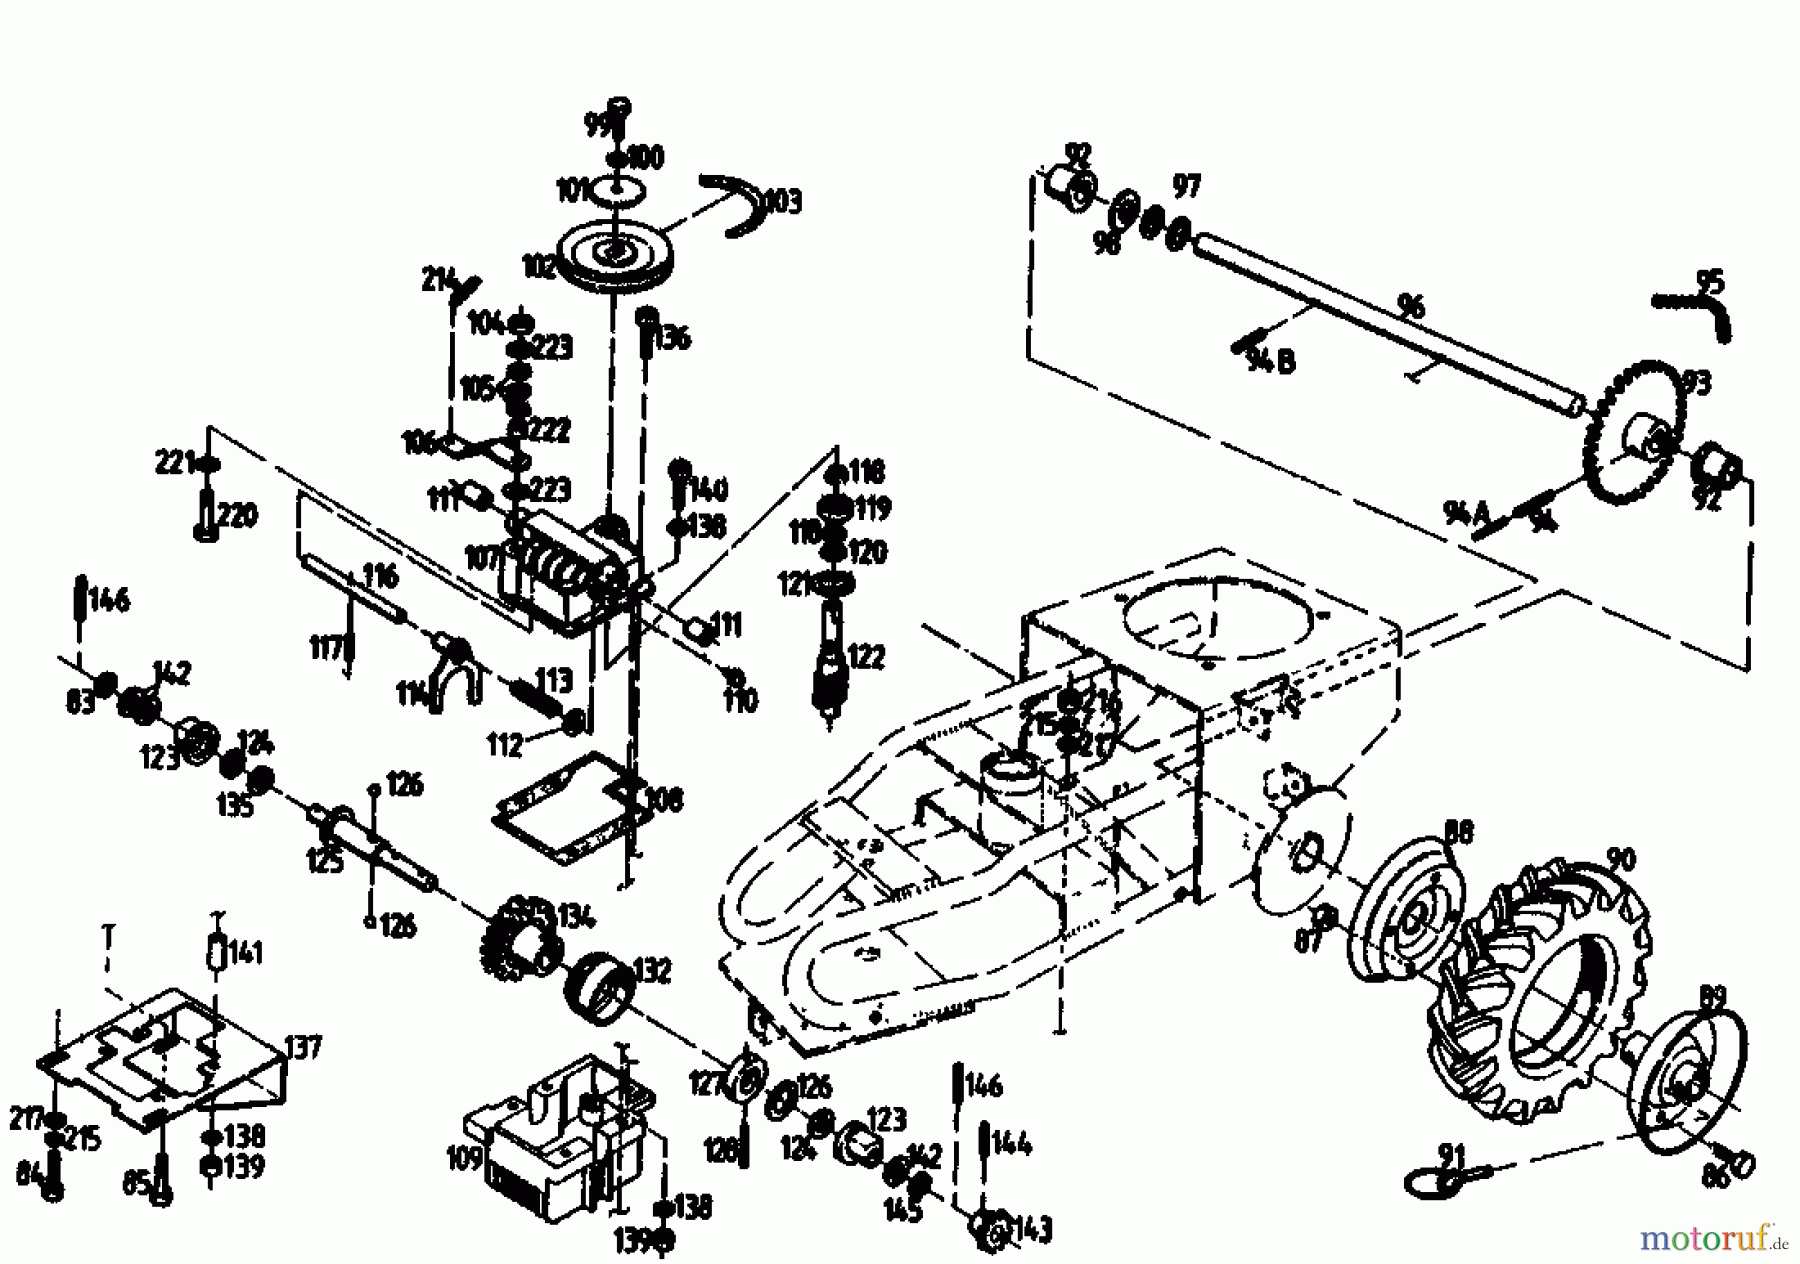  Gutbrod Cutter bar mower BM 710 07515.01  (1989) Gearbox, Wheels